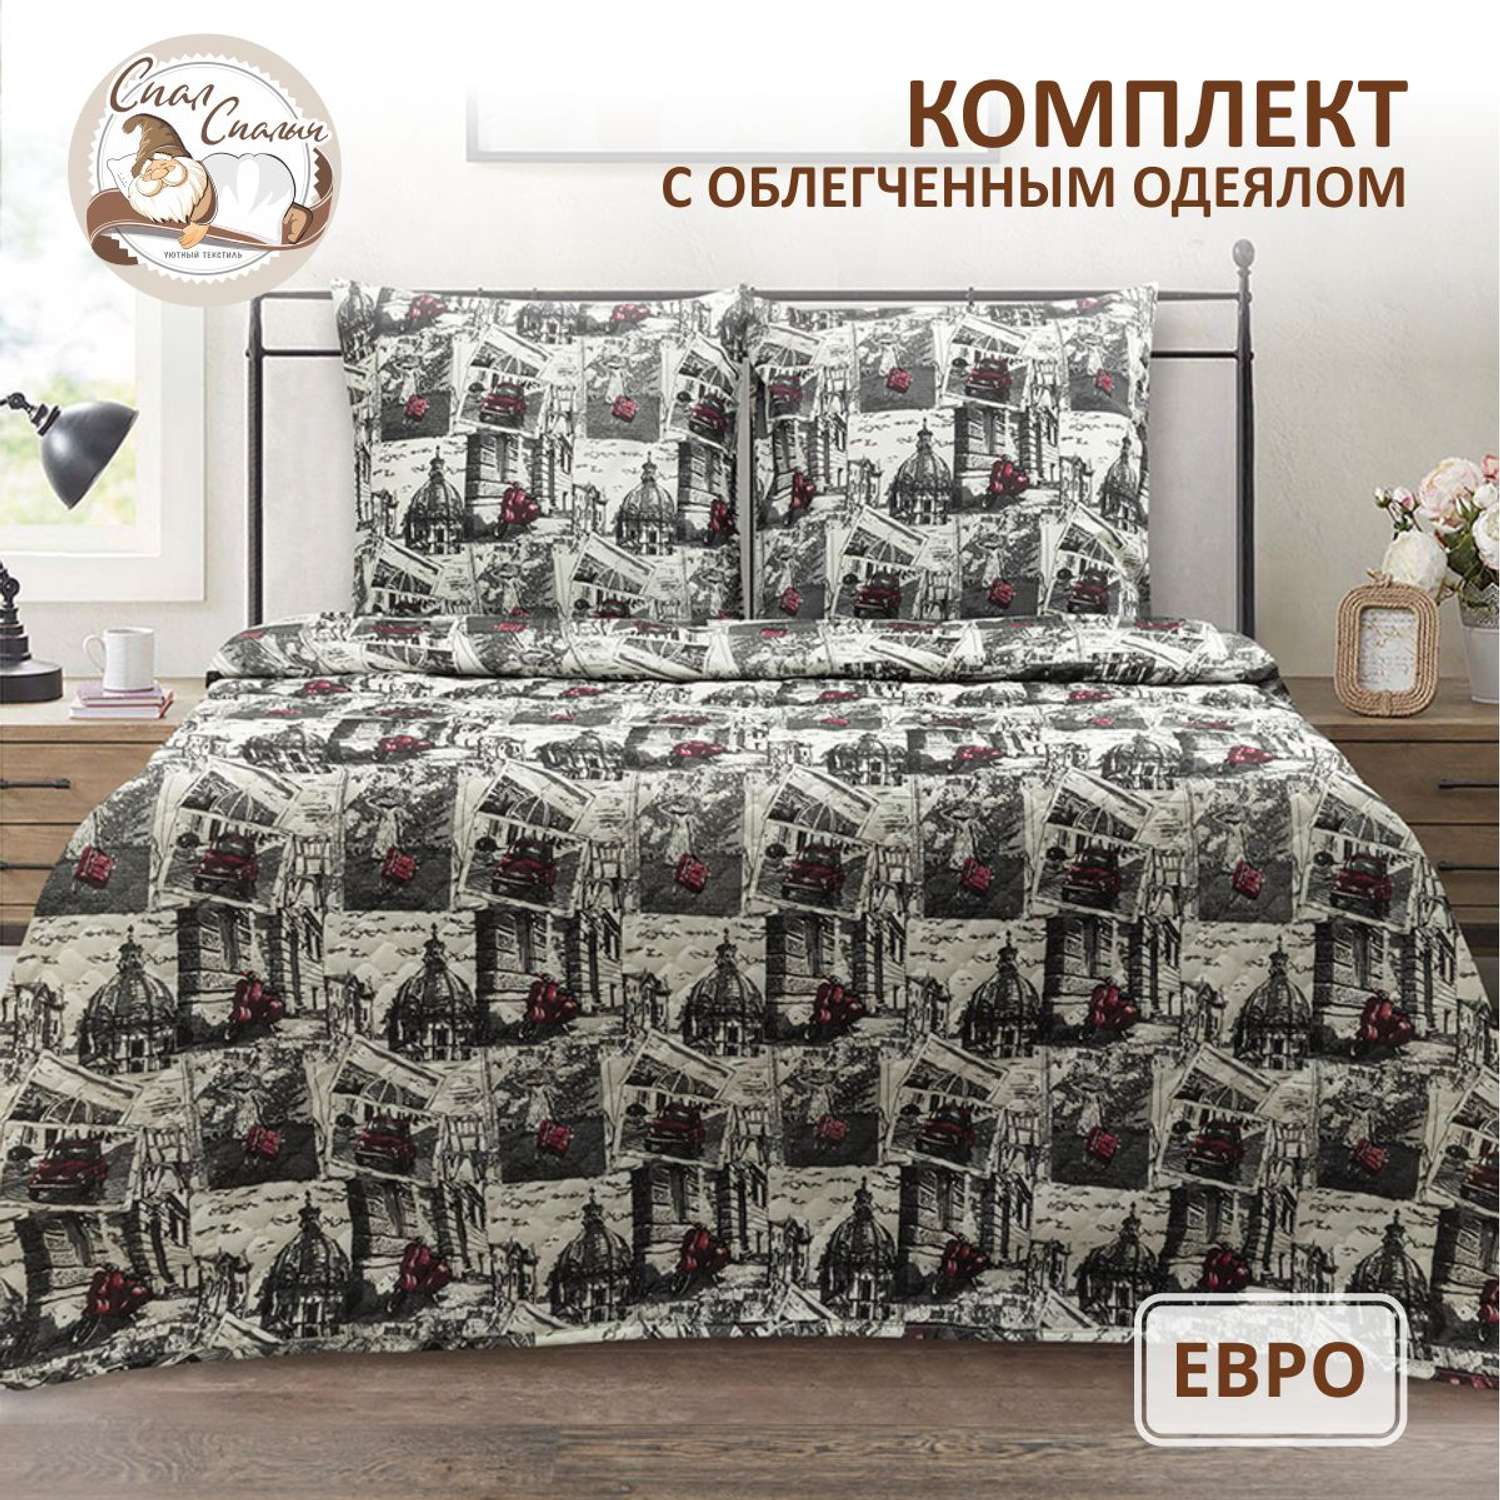 Комплект постельного белья Спал Спалыч универсальный с покрывалом евро рис.3930-1 - фото 1